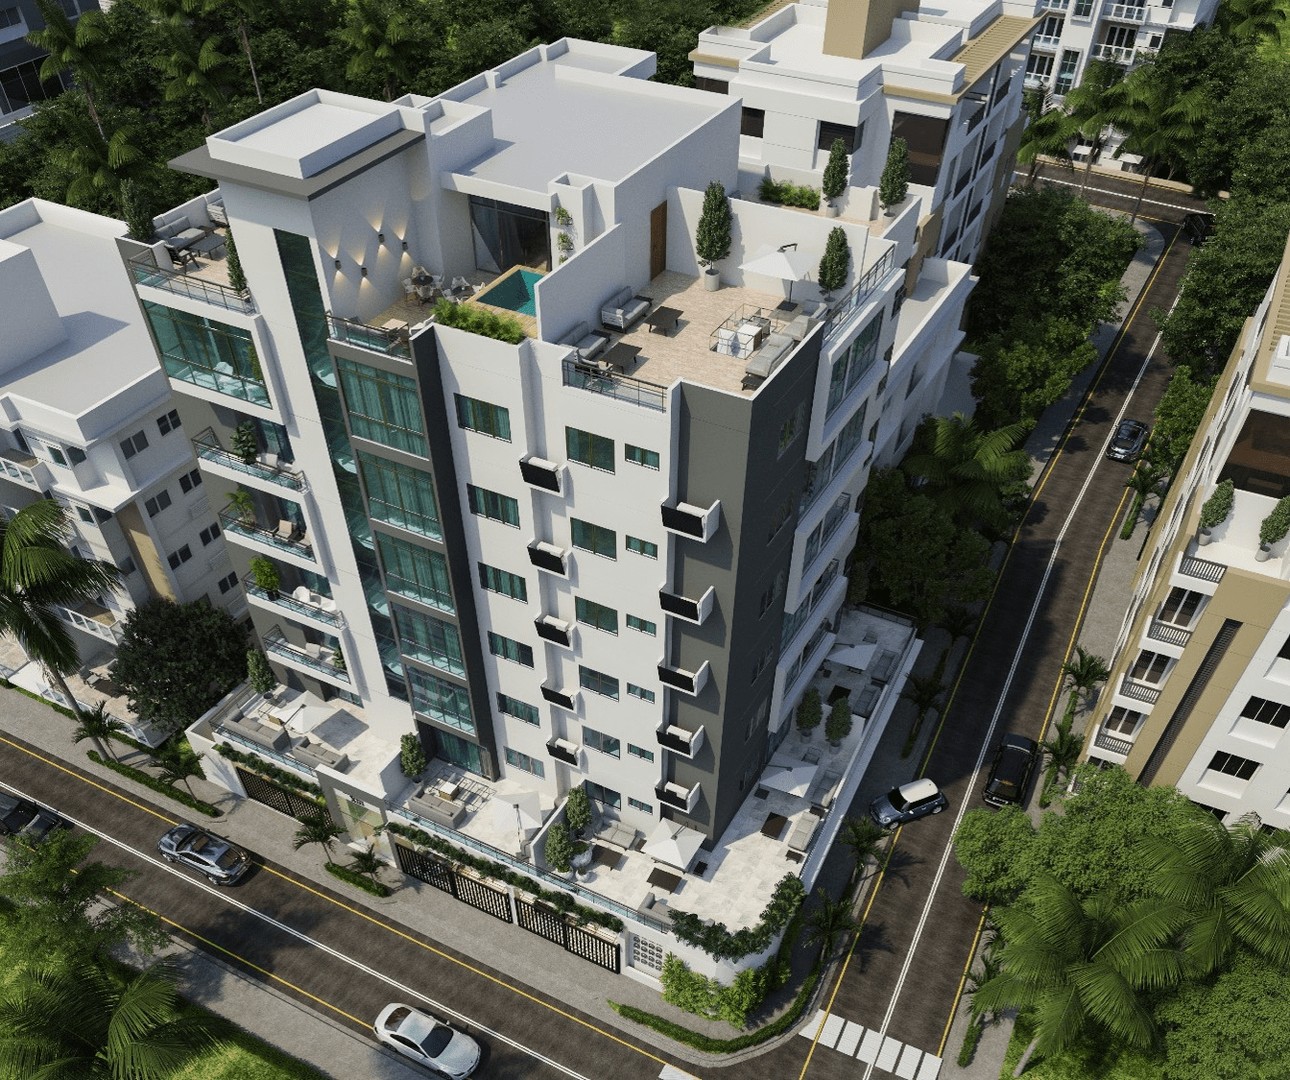 Proyecto de apartamentos en construcción
en Mirador Norte